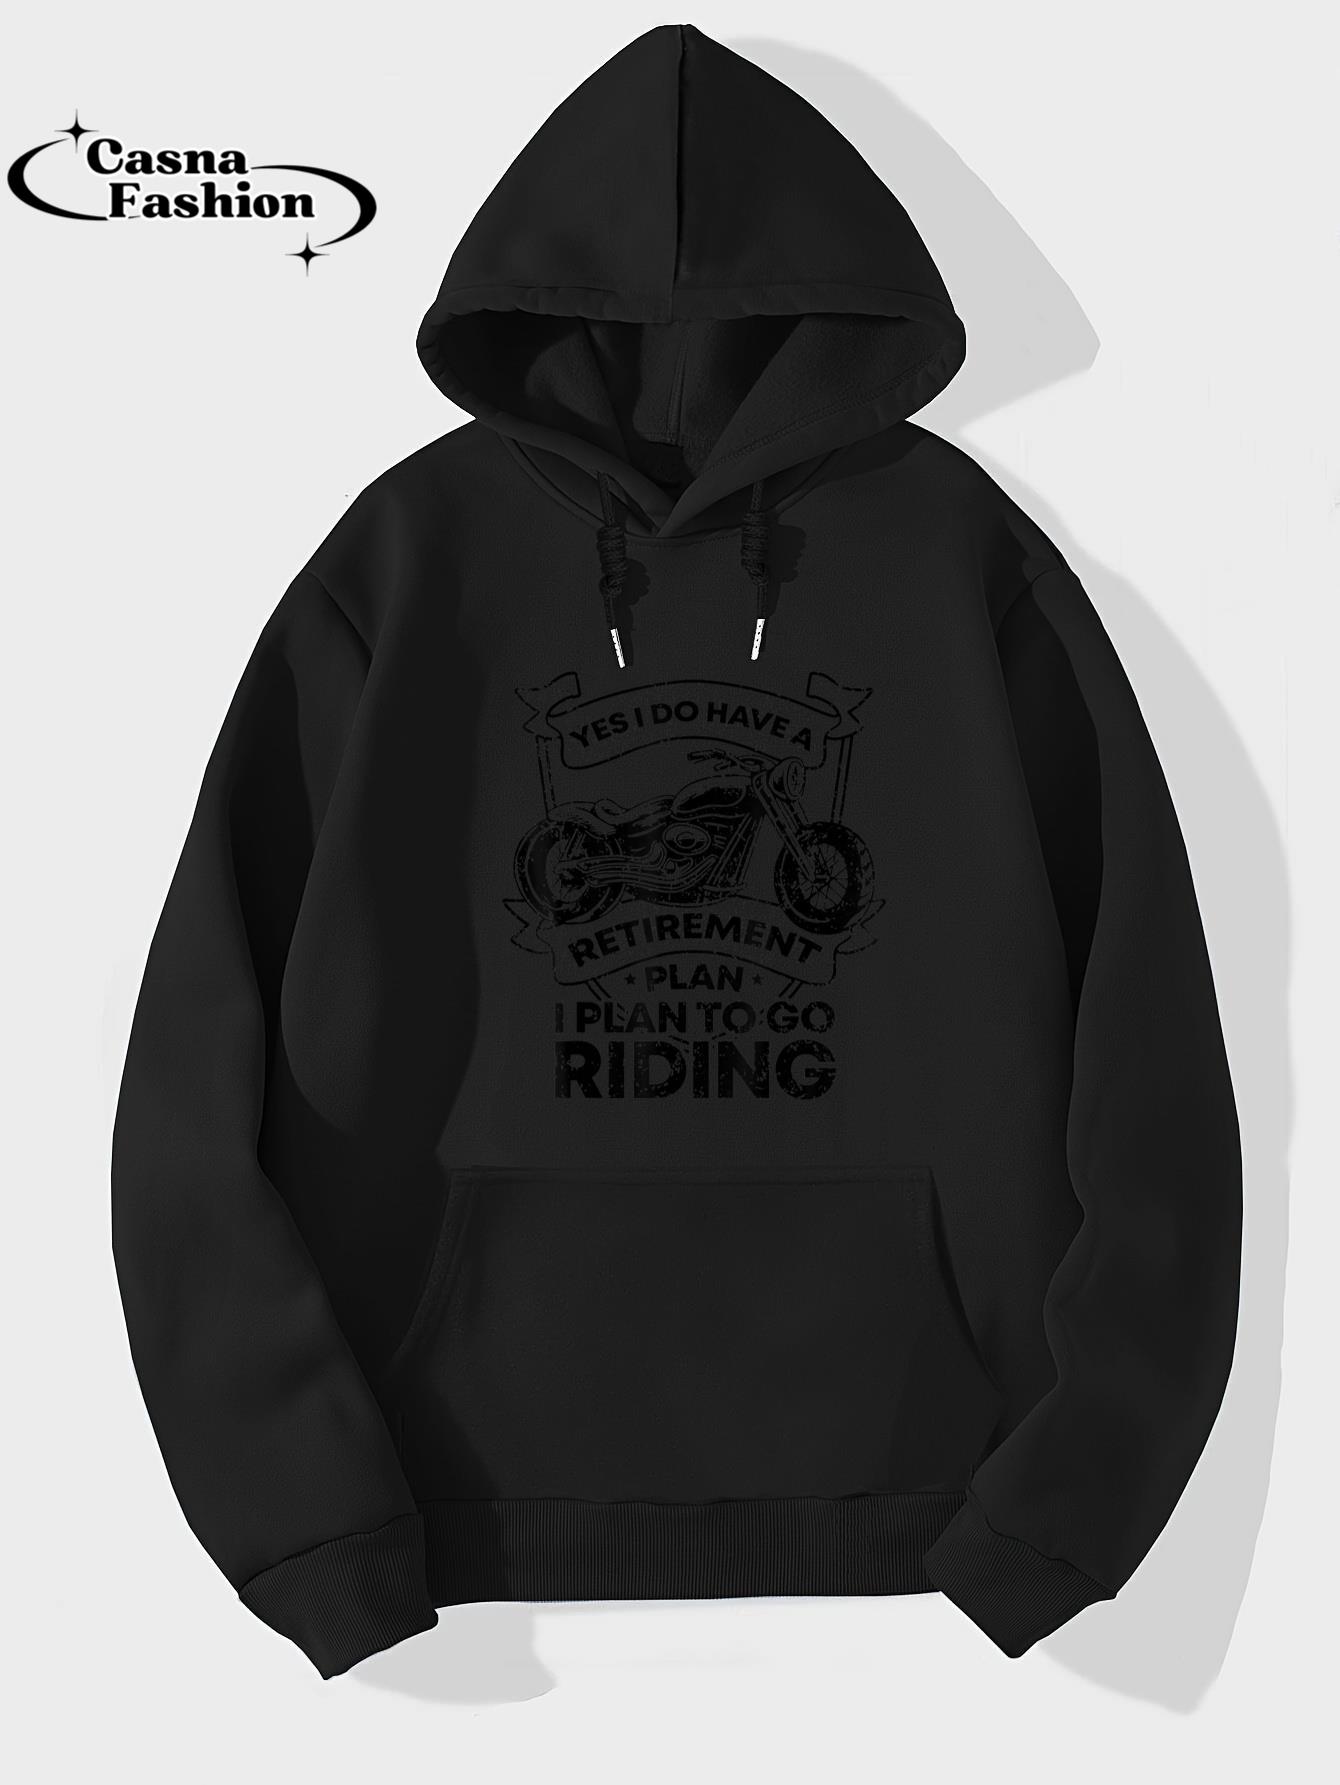 casnafashion_Hoodie_Retirement Plan Riding Motorcycle Lovers Riders Biker Gift T-Shirt_hoodie_black hoodie